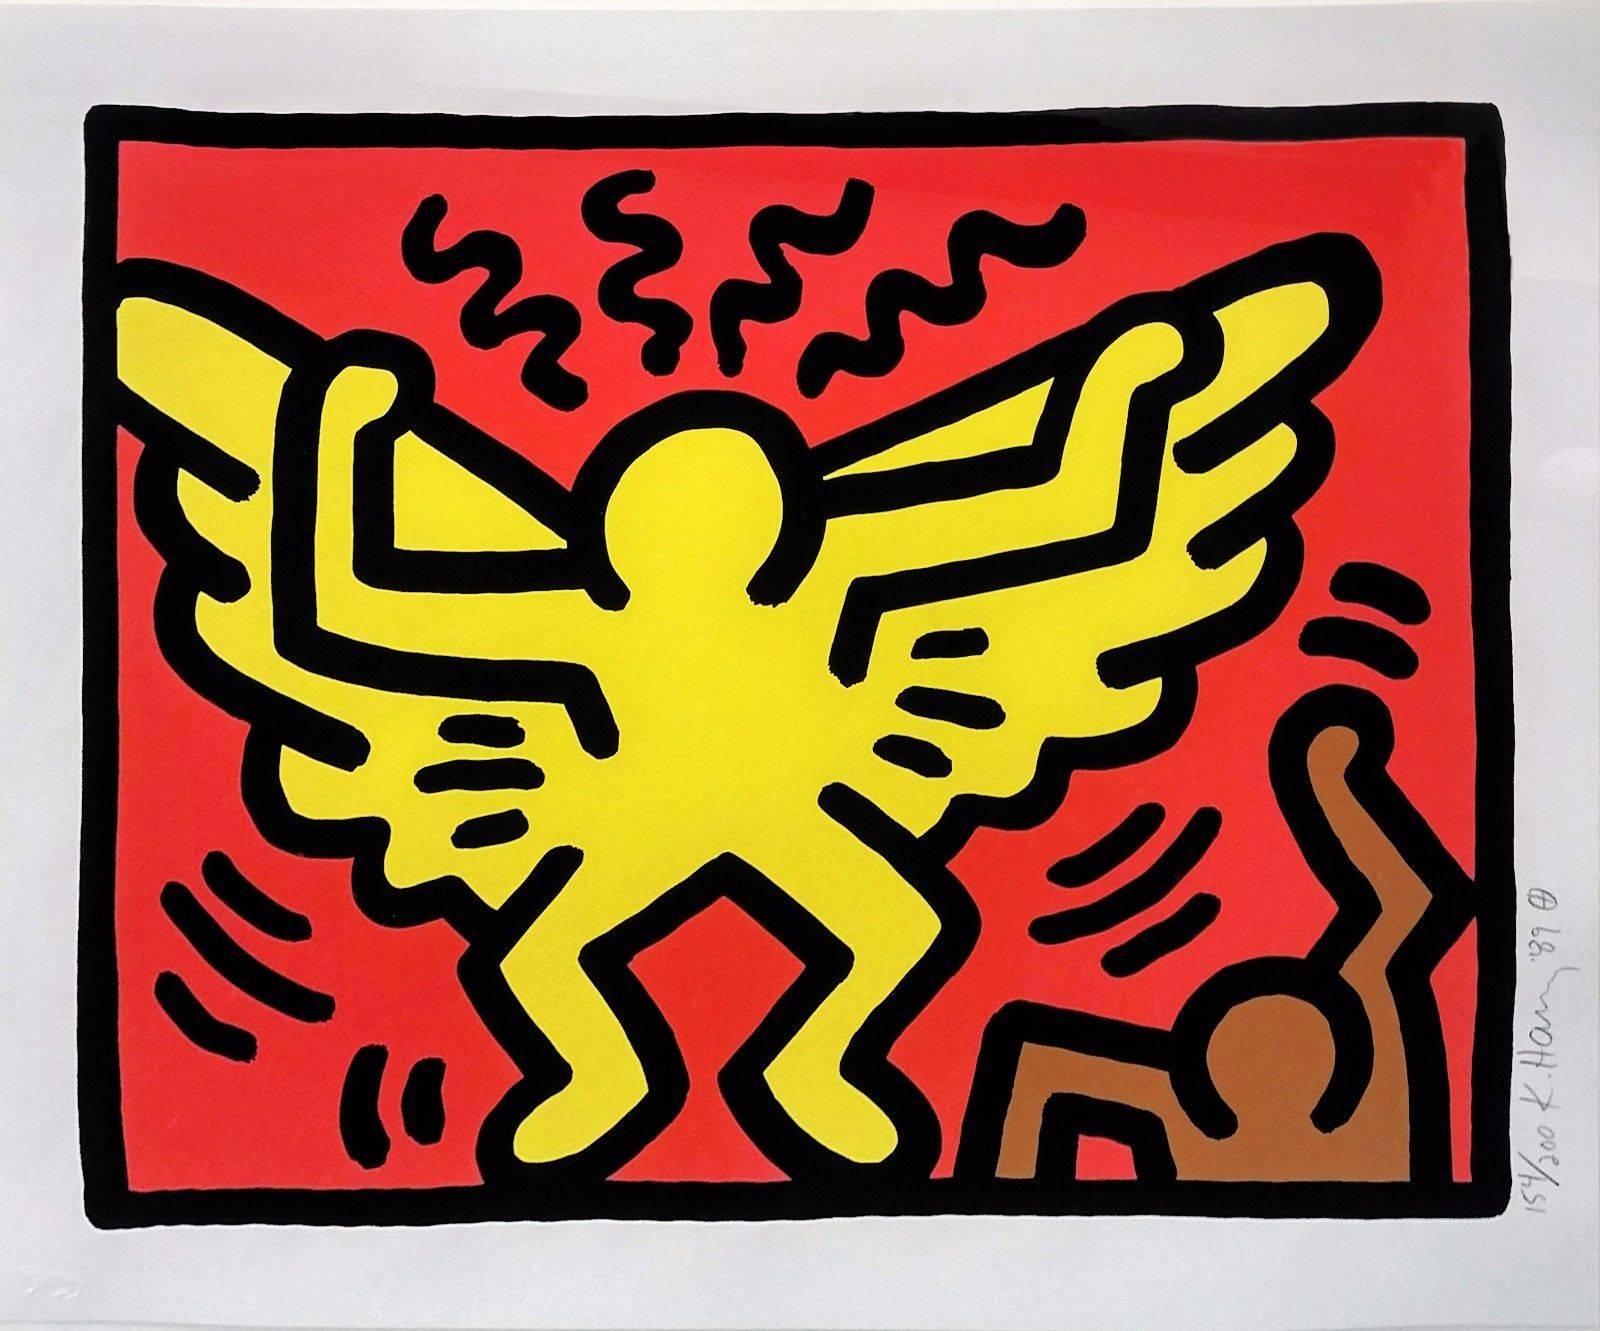 VENTE POP IV(1) - Print de Keith Haring